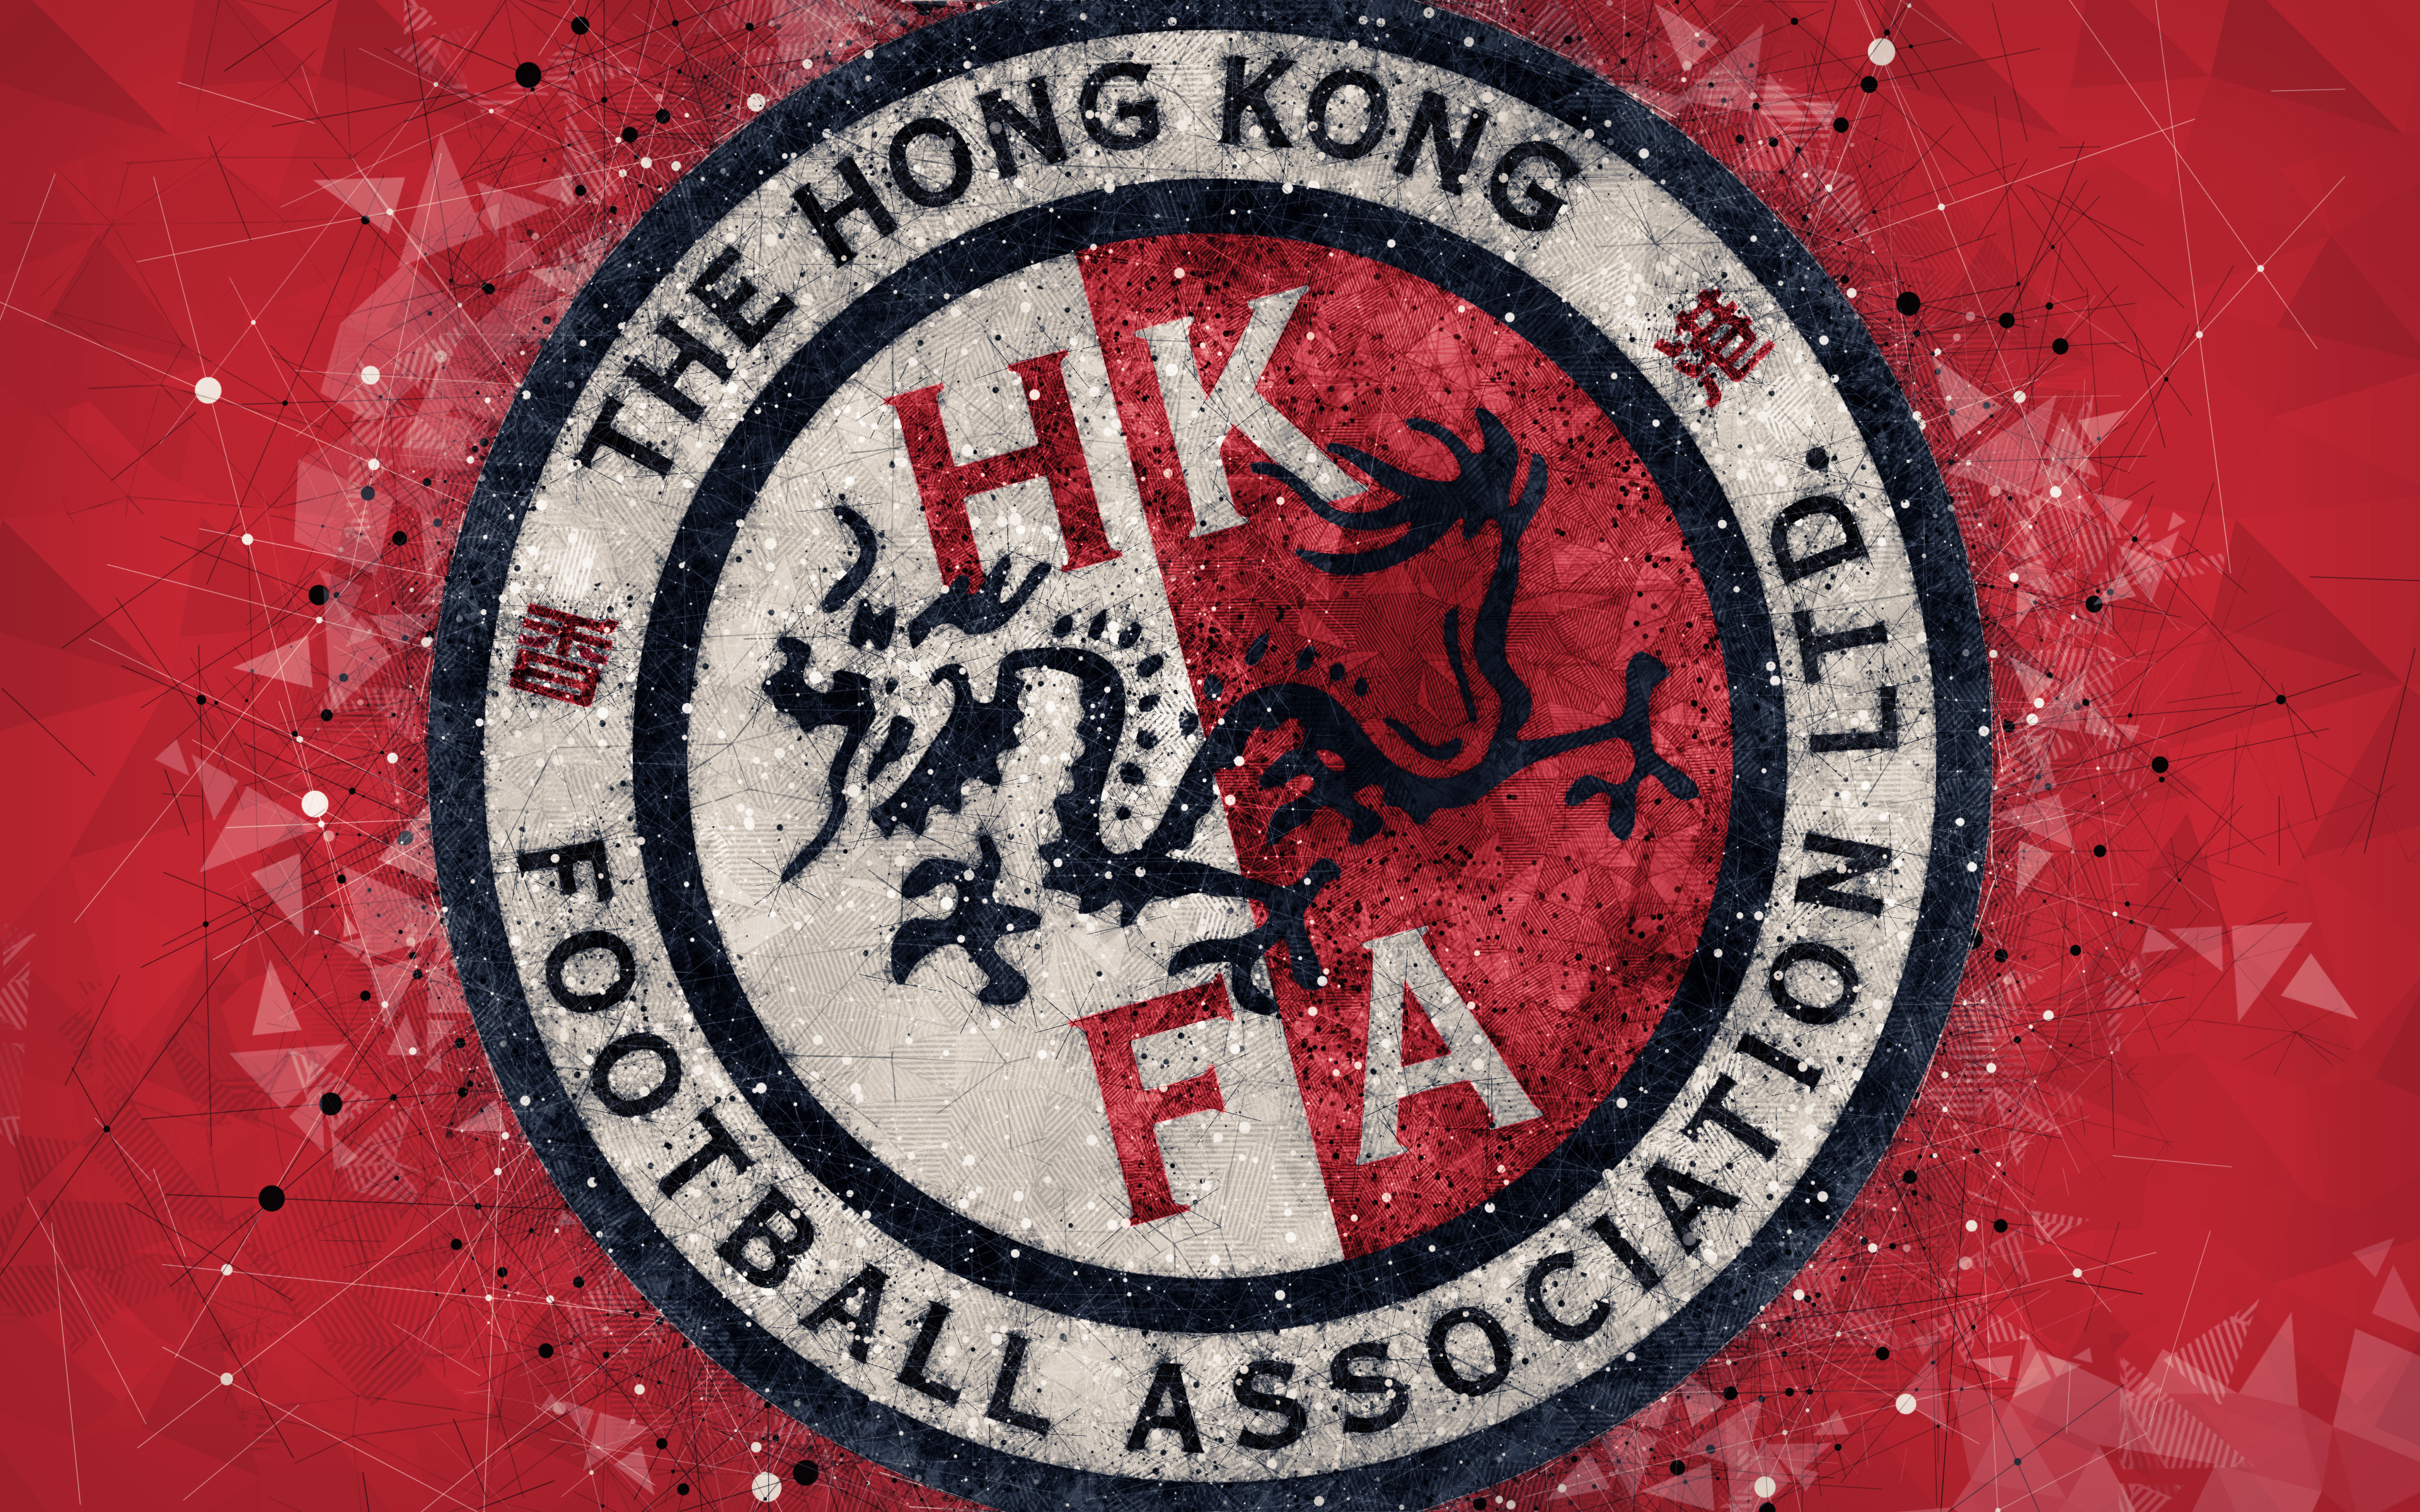 Hong Kong National Football Team Wallpapers